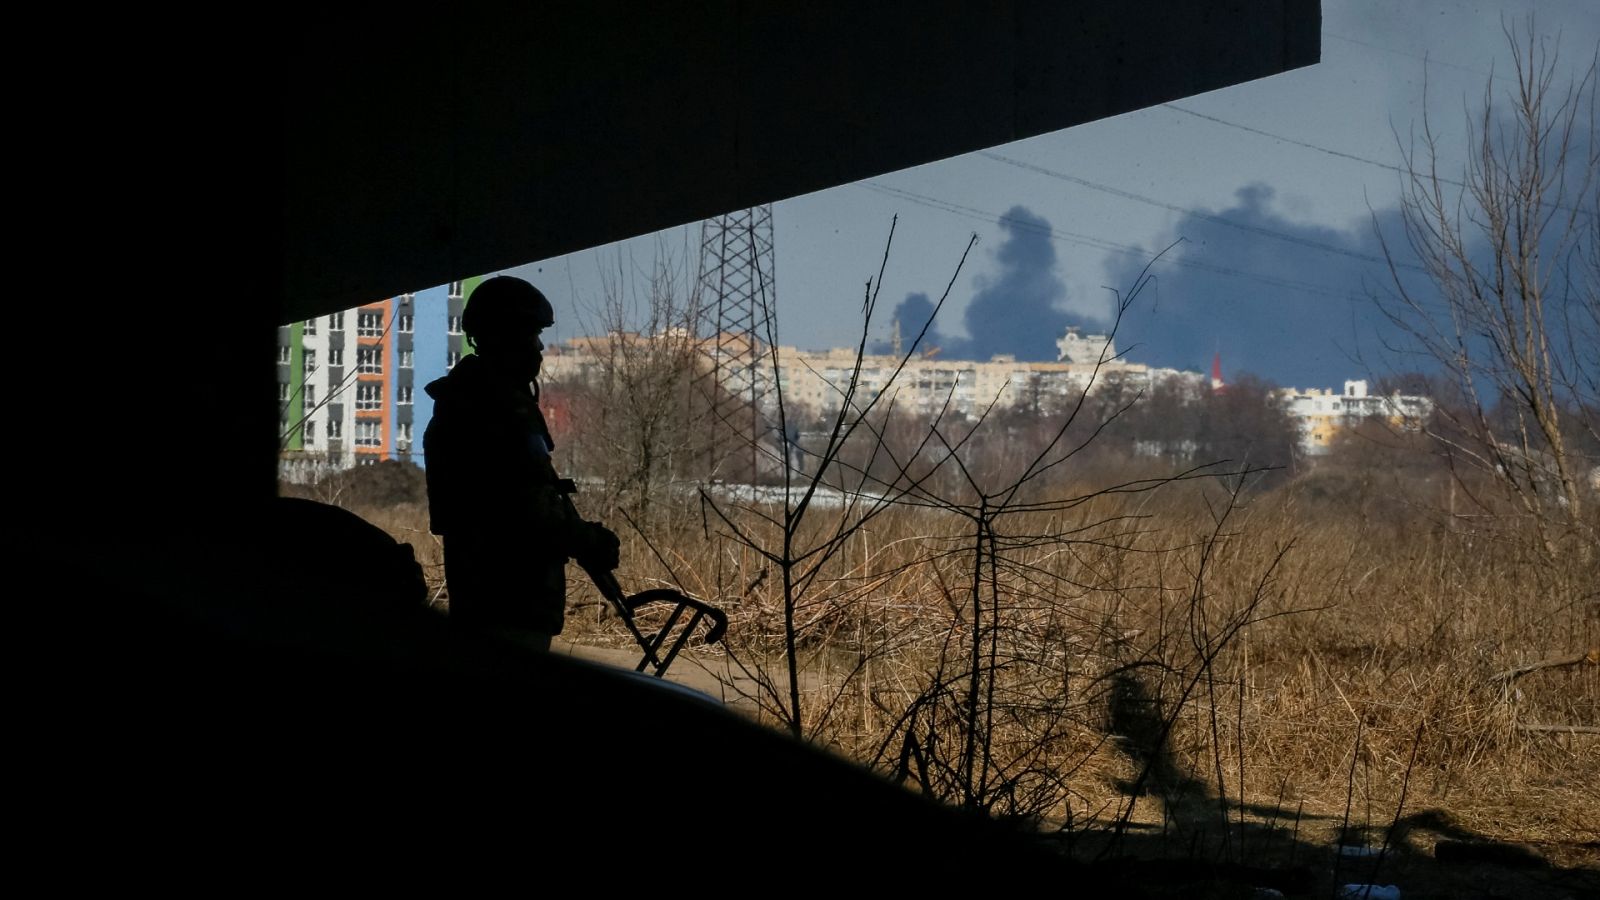 Guerra en Ucrania: El cerco ruso pone a Mariúpol en situación desesperada